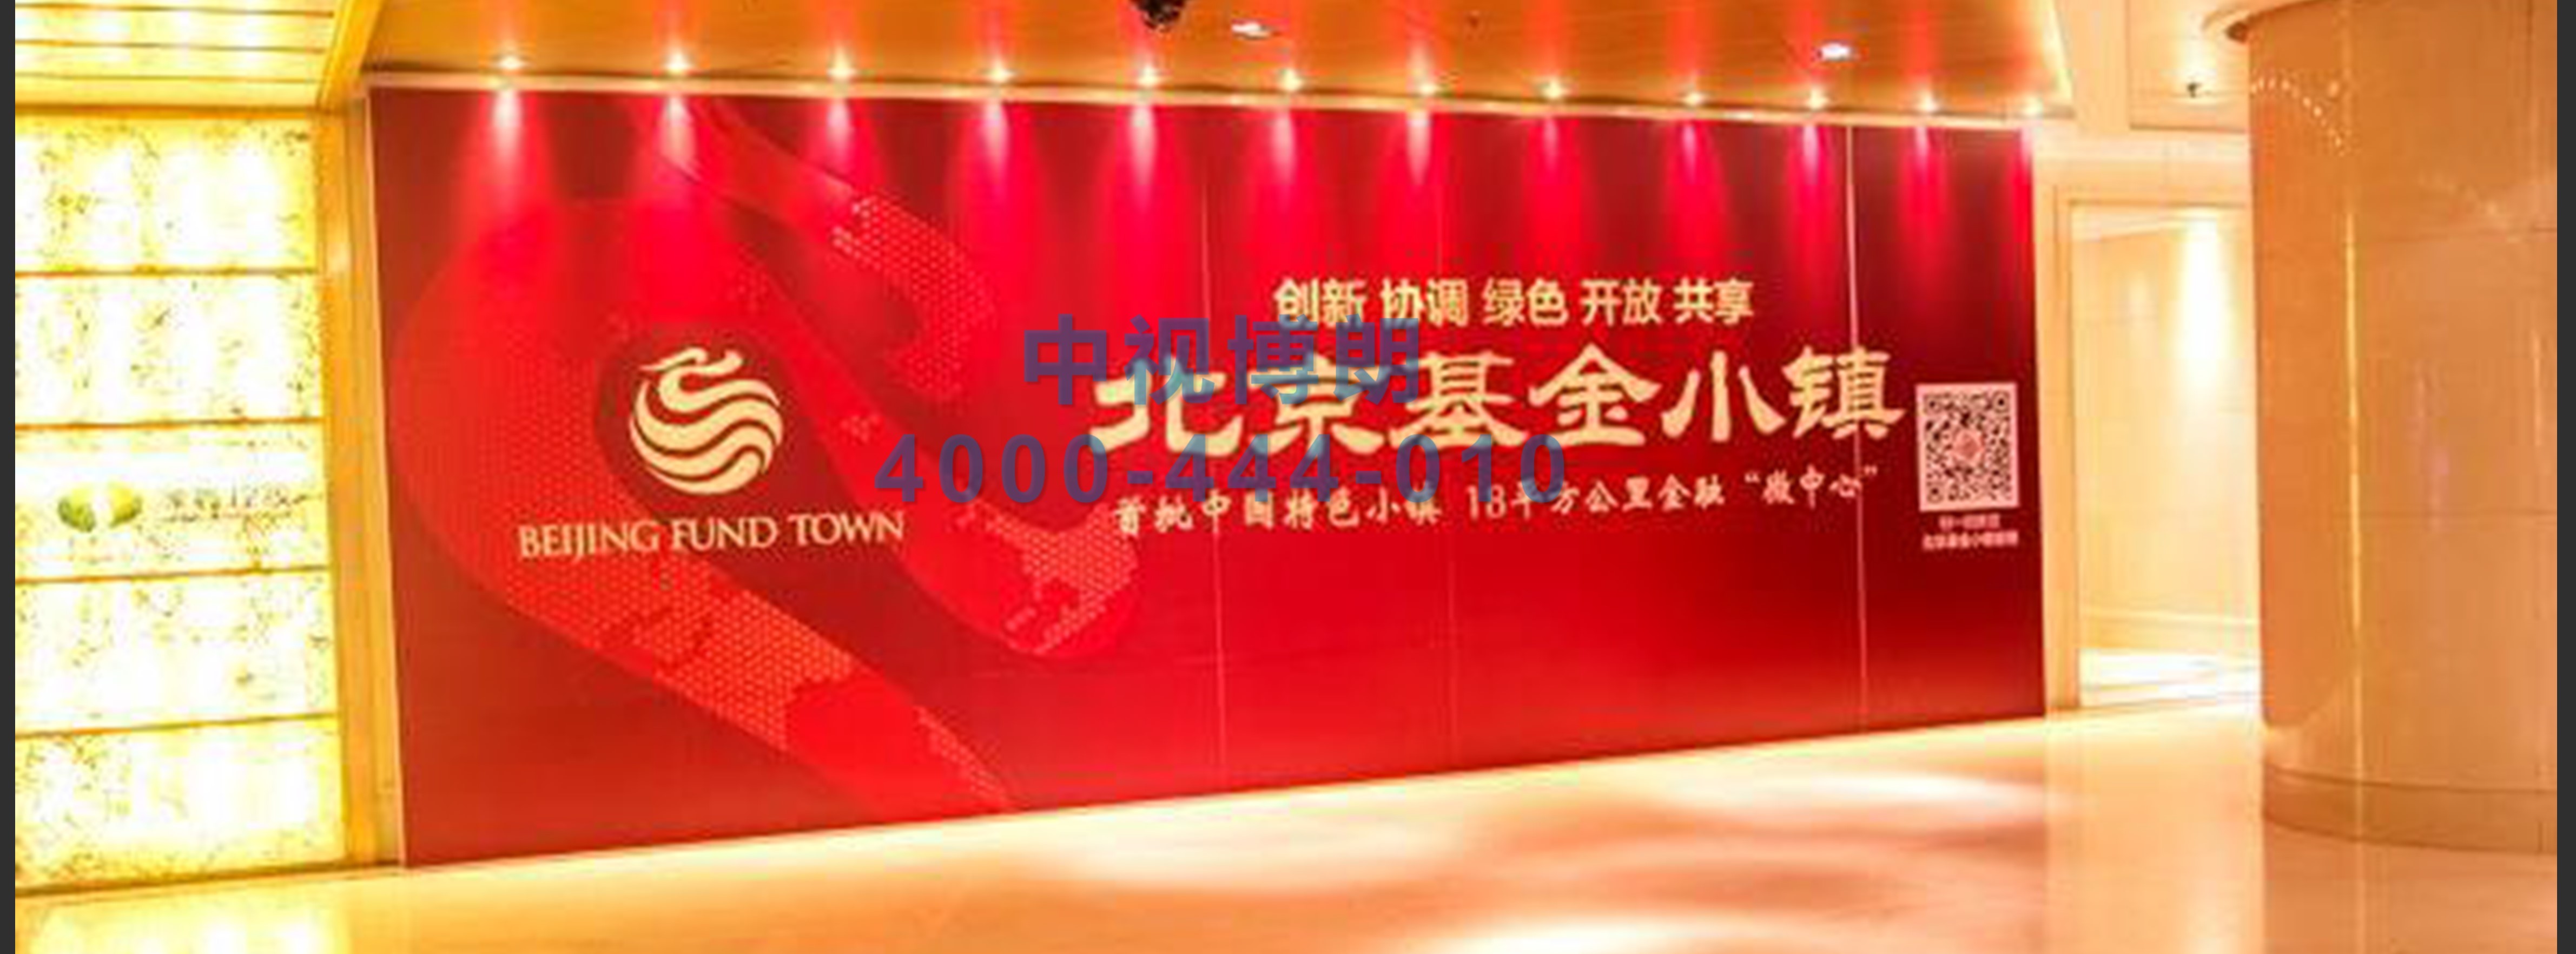 北京首都机场广告-T3贵宾室大厅超大展板